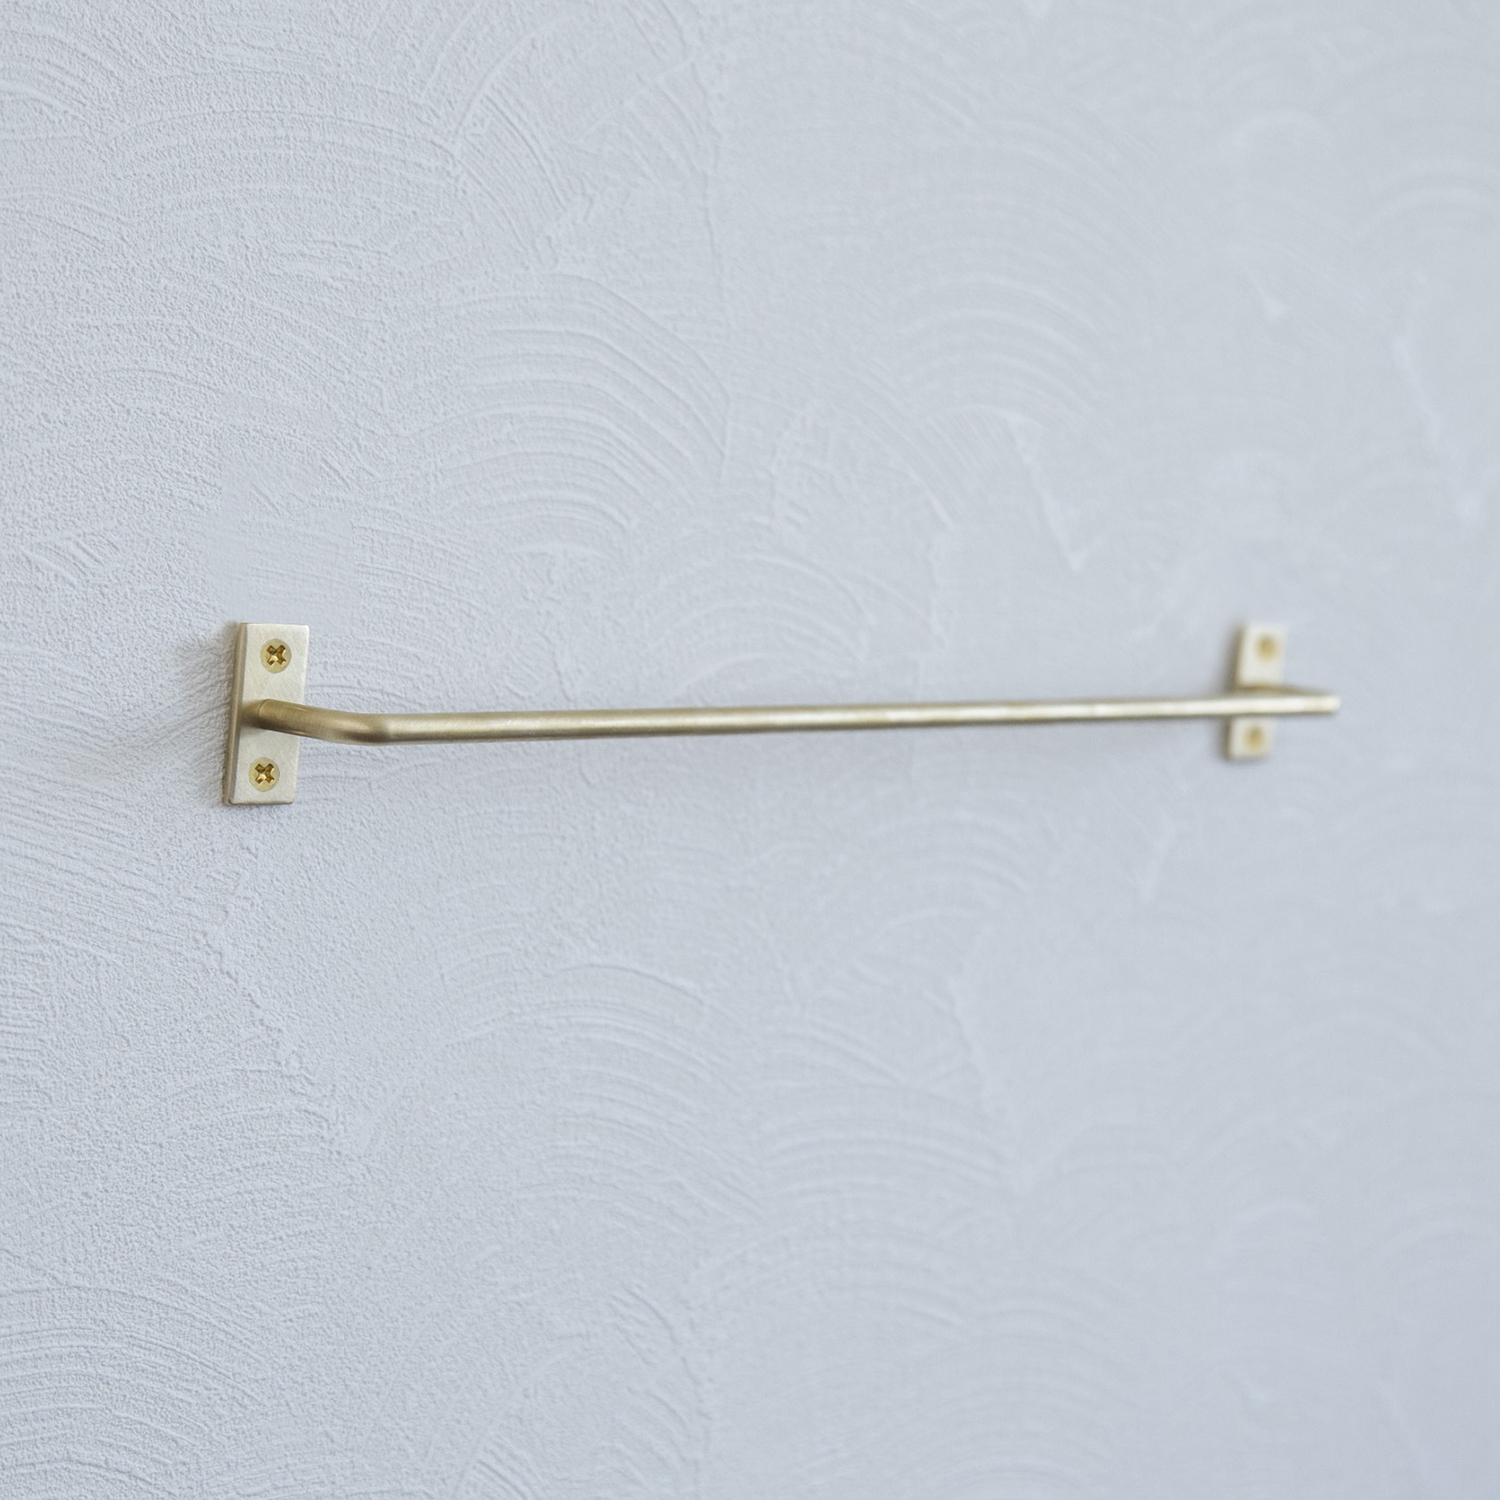 千葉工作所/Towel holder Brass（タオルホルダー 真鍮）M